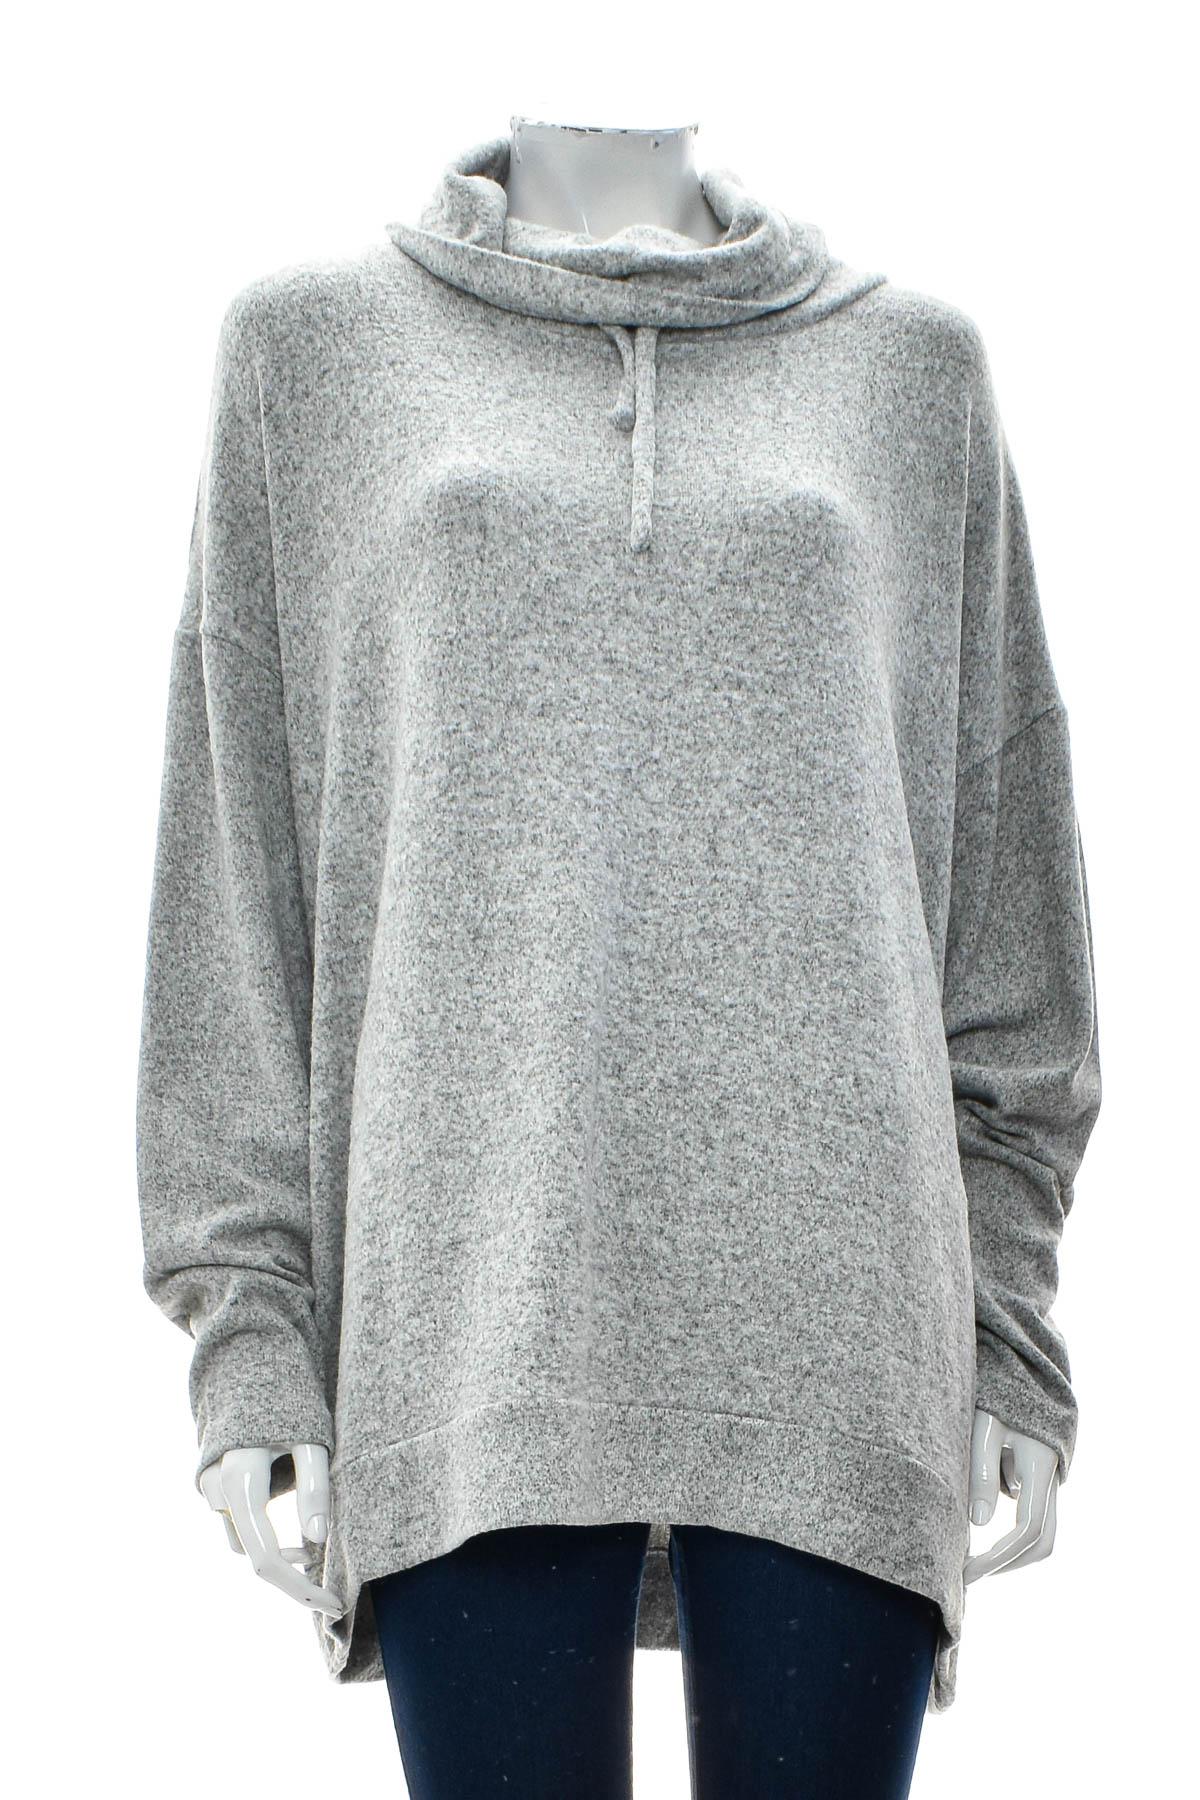 Women's sweater - Avella - 0